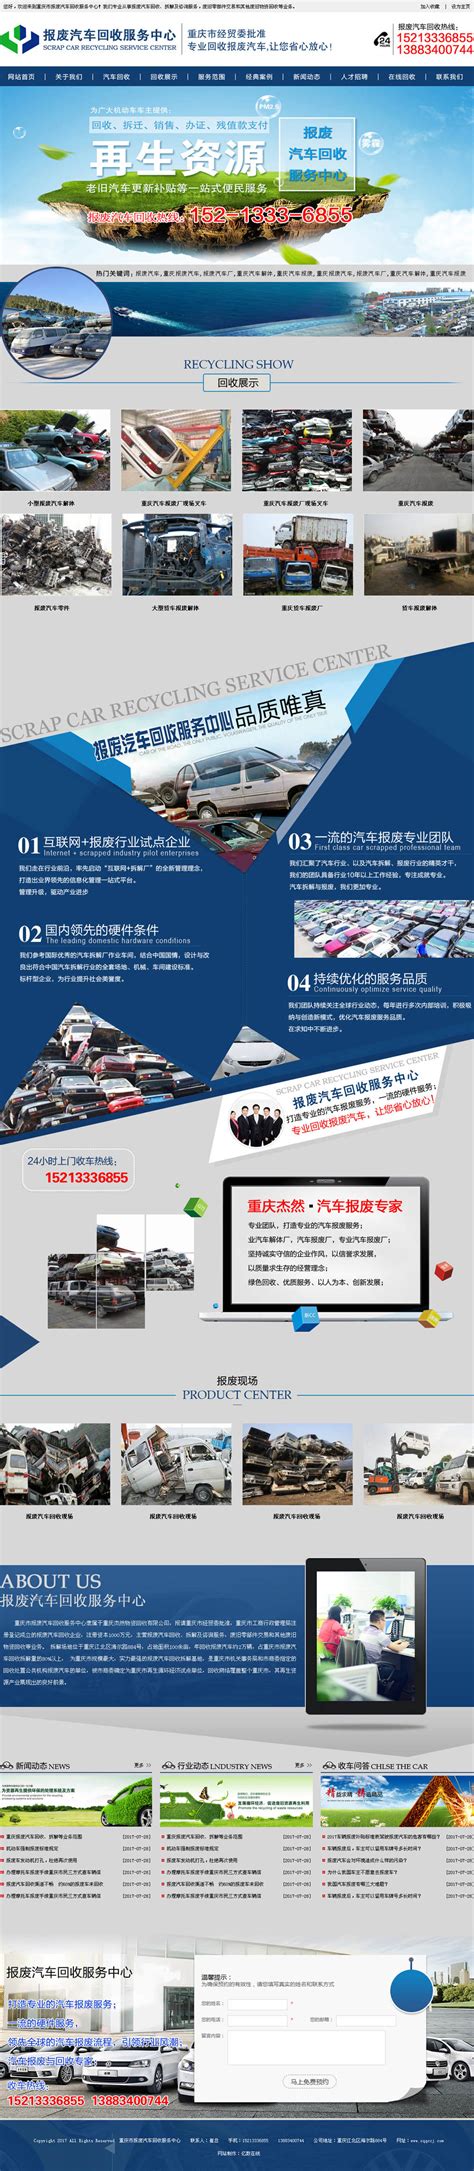 重庆市报废汽车回收服务中心—亿数在线